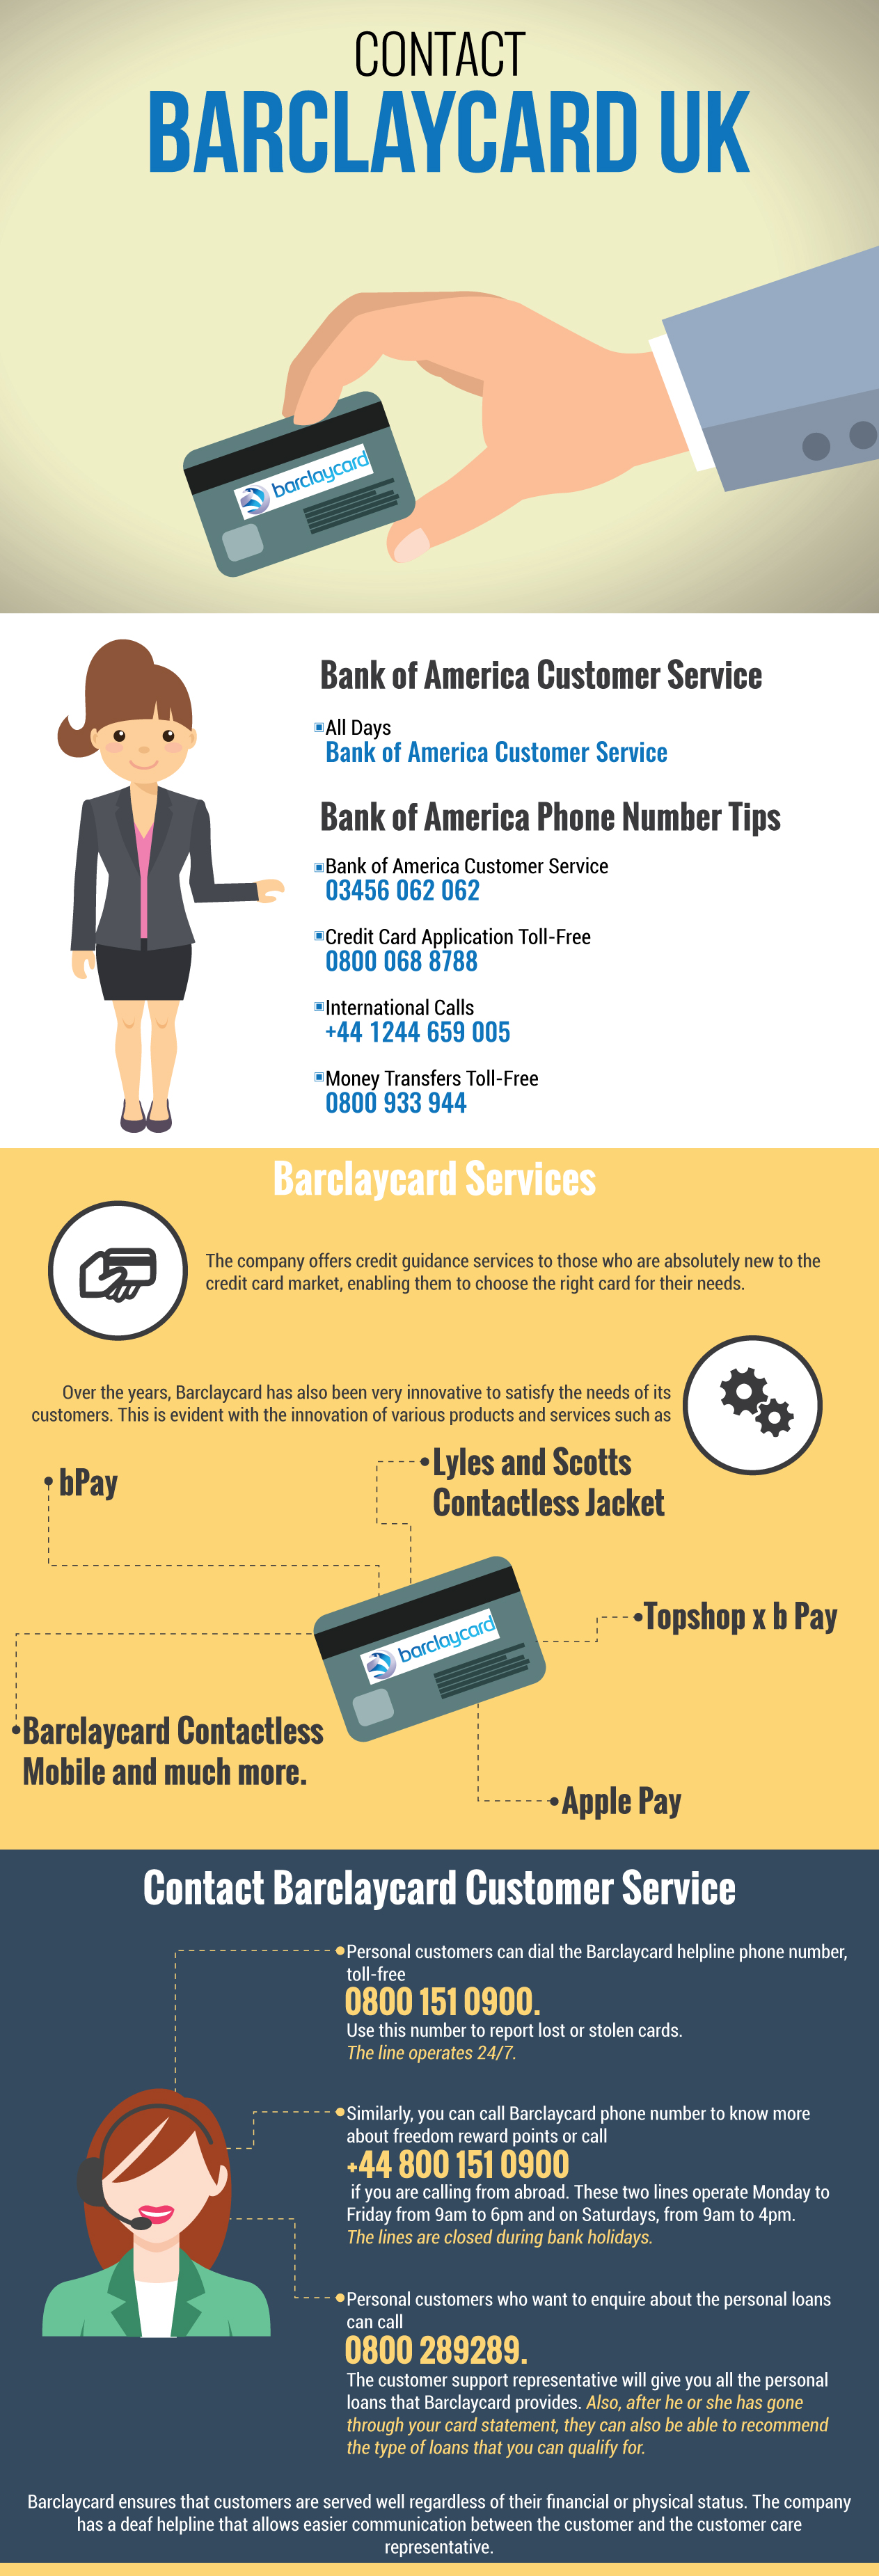 Barclaycard Customer Service